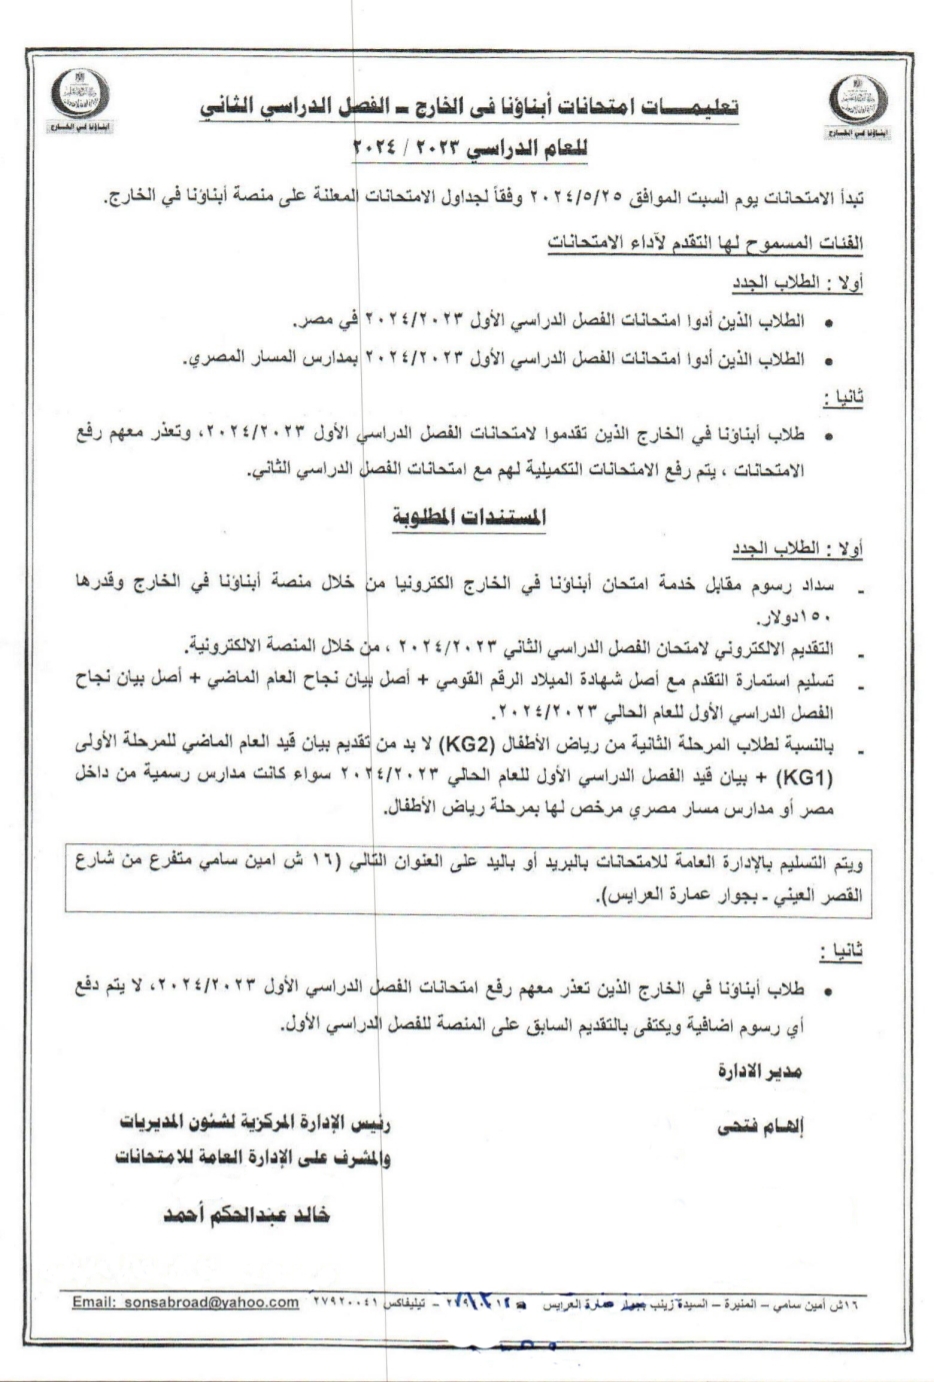 تعليمات امتحانات الطلاب المصريين بالخارج للترم الثانى